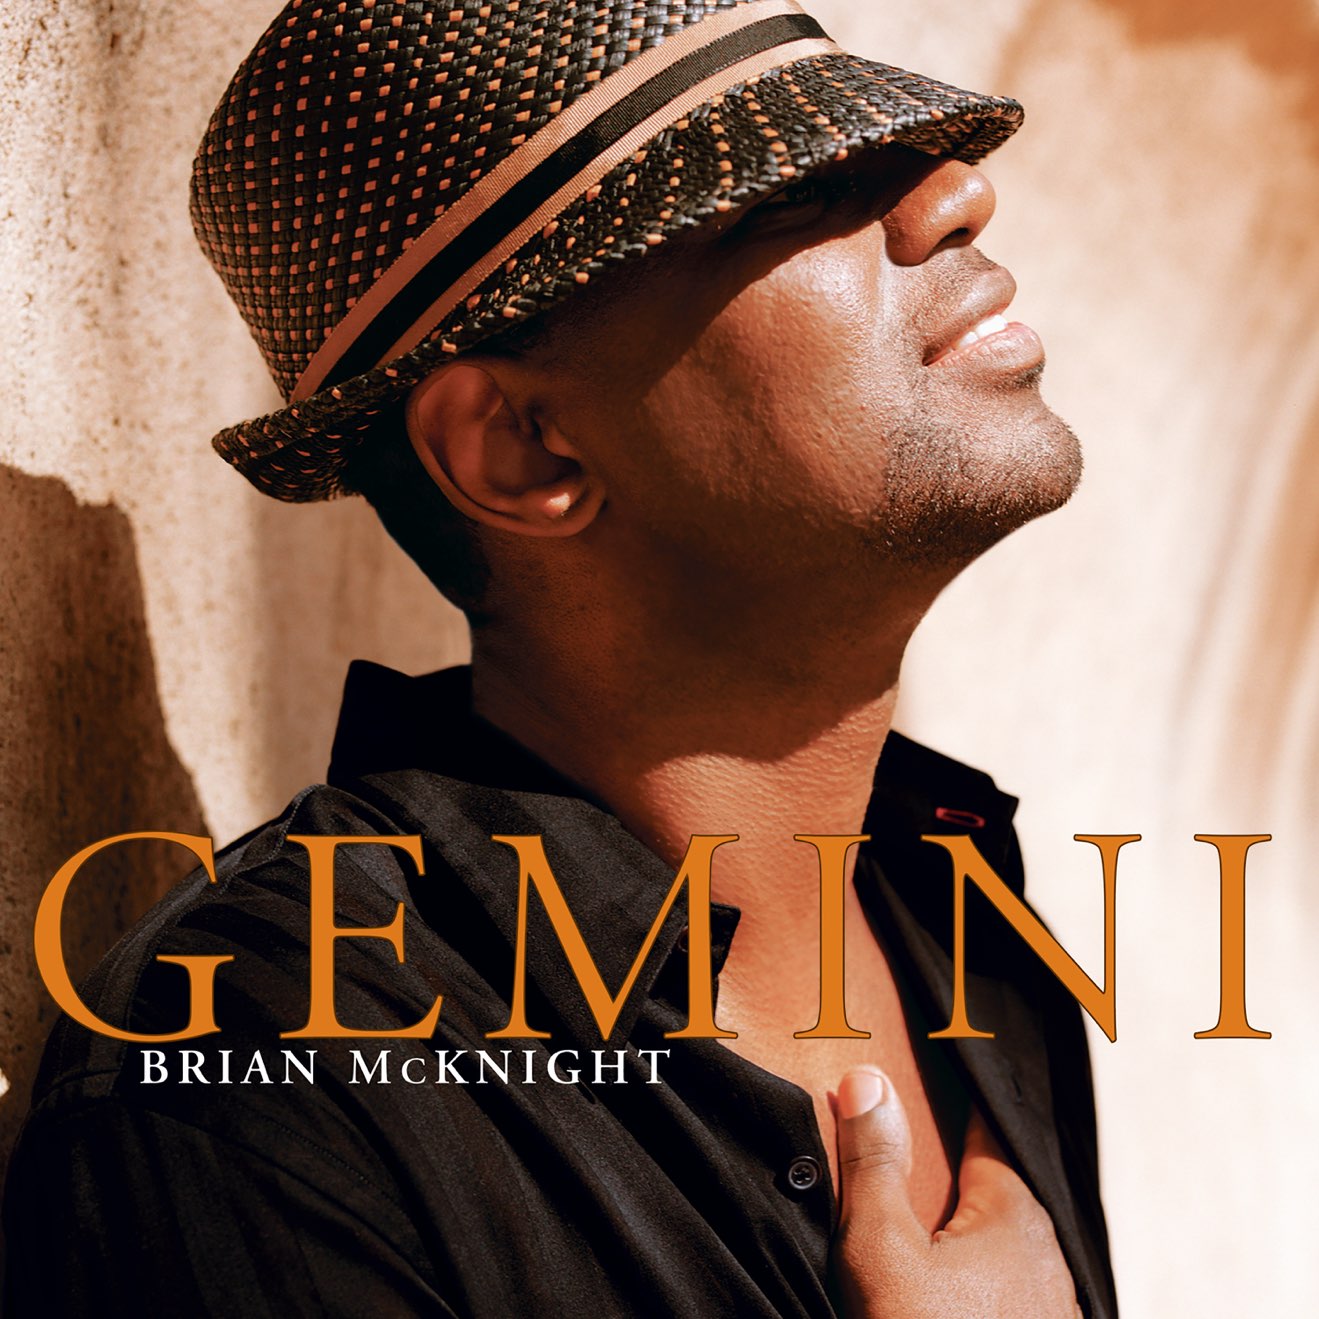 Brian McKnight – Gemini (2005) [iTunes Match M4A]